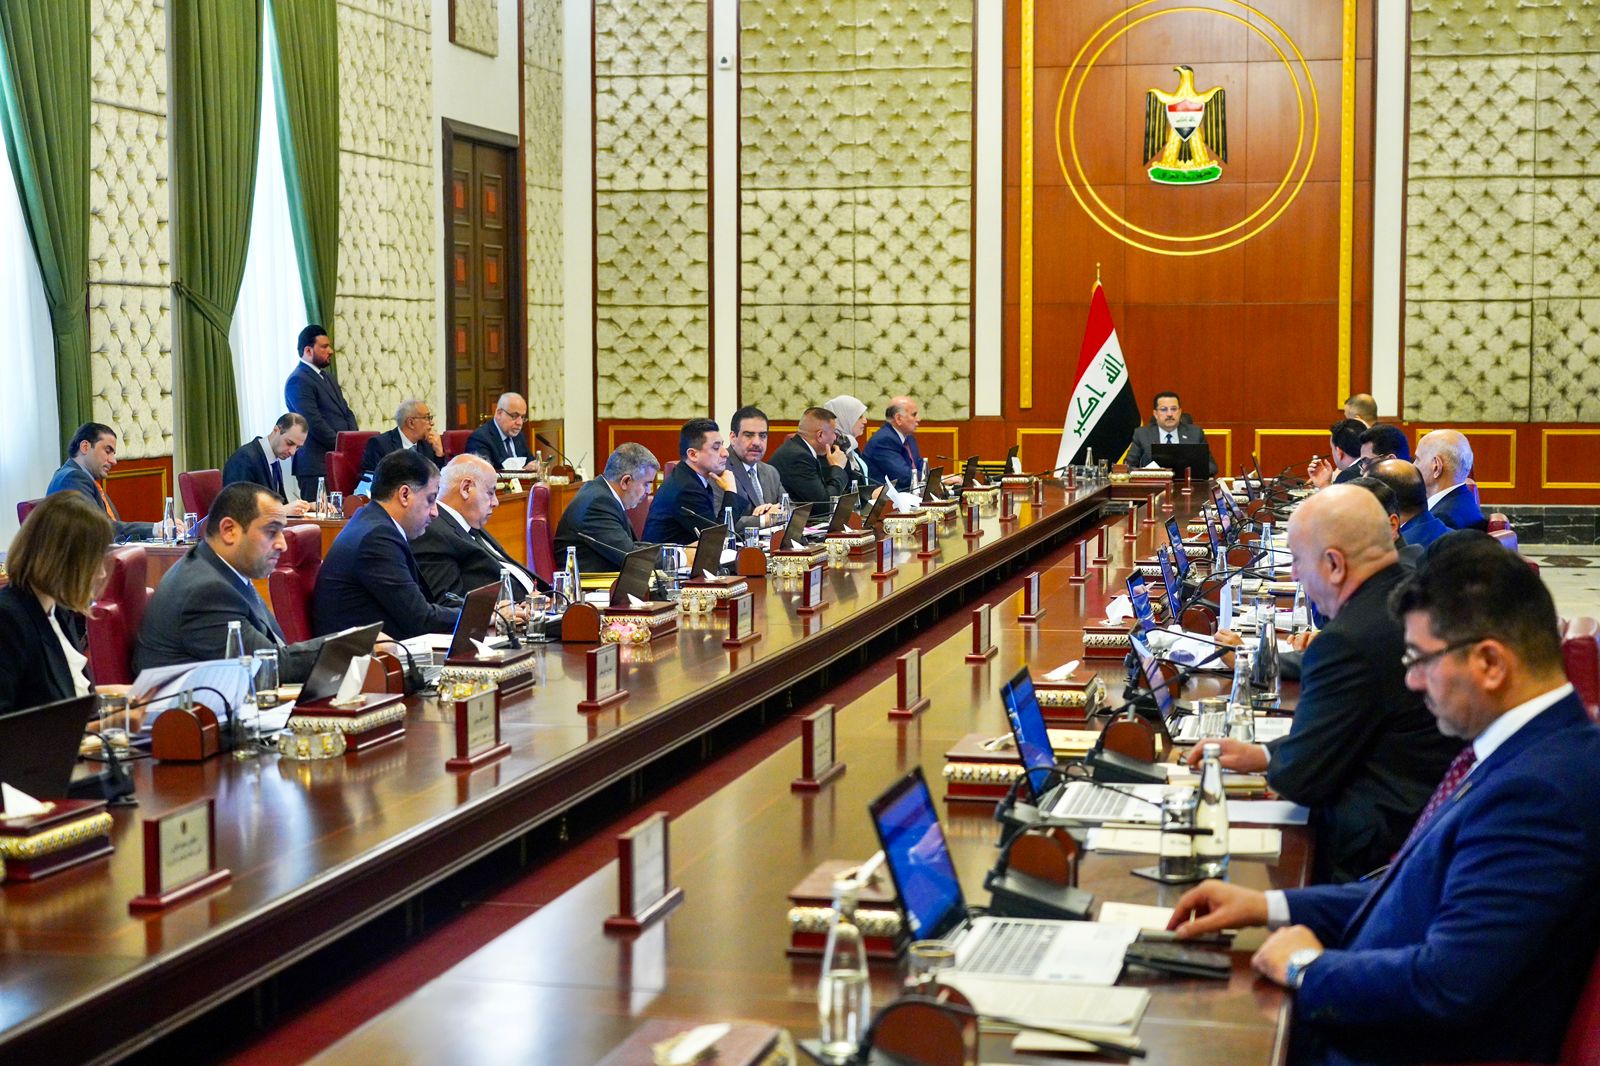 مجلس الوزراء العراقي يقرر تغيير أوقات الدوام الرسمي ويتخذ جملة قرارات اقتصادية وكهربائية